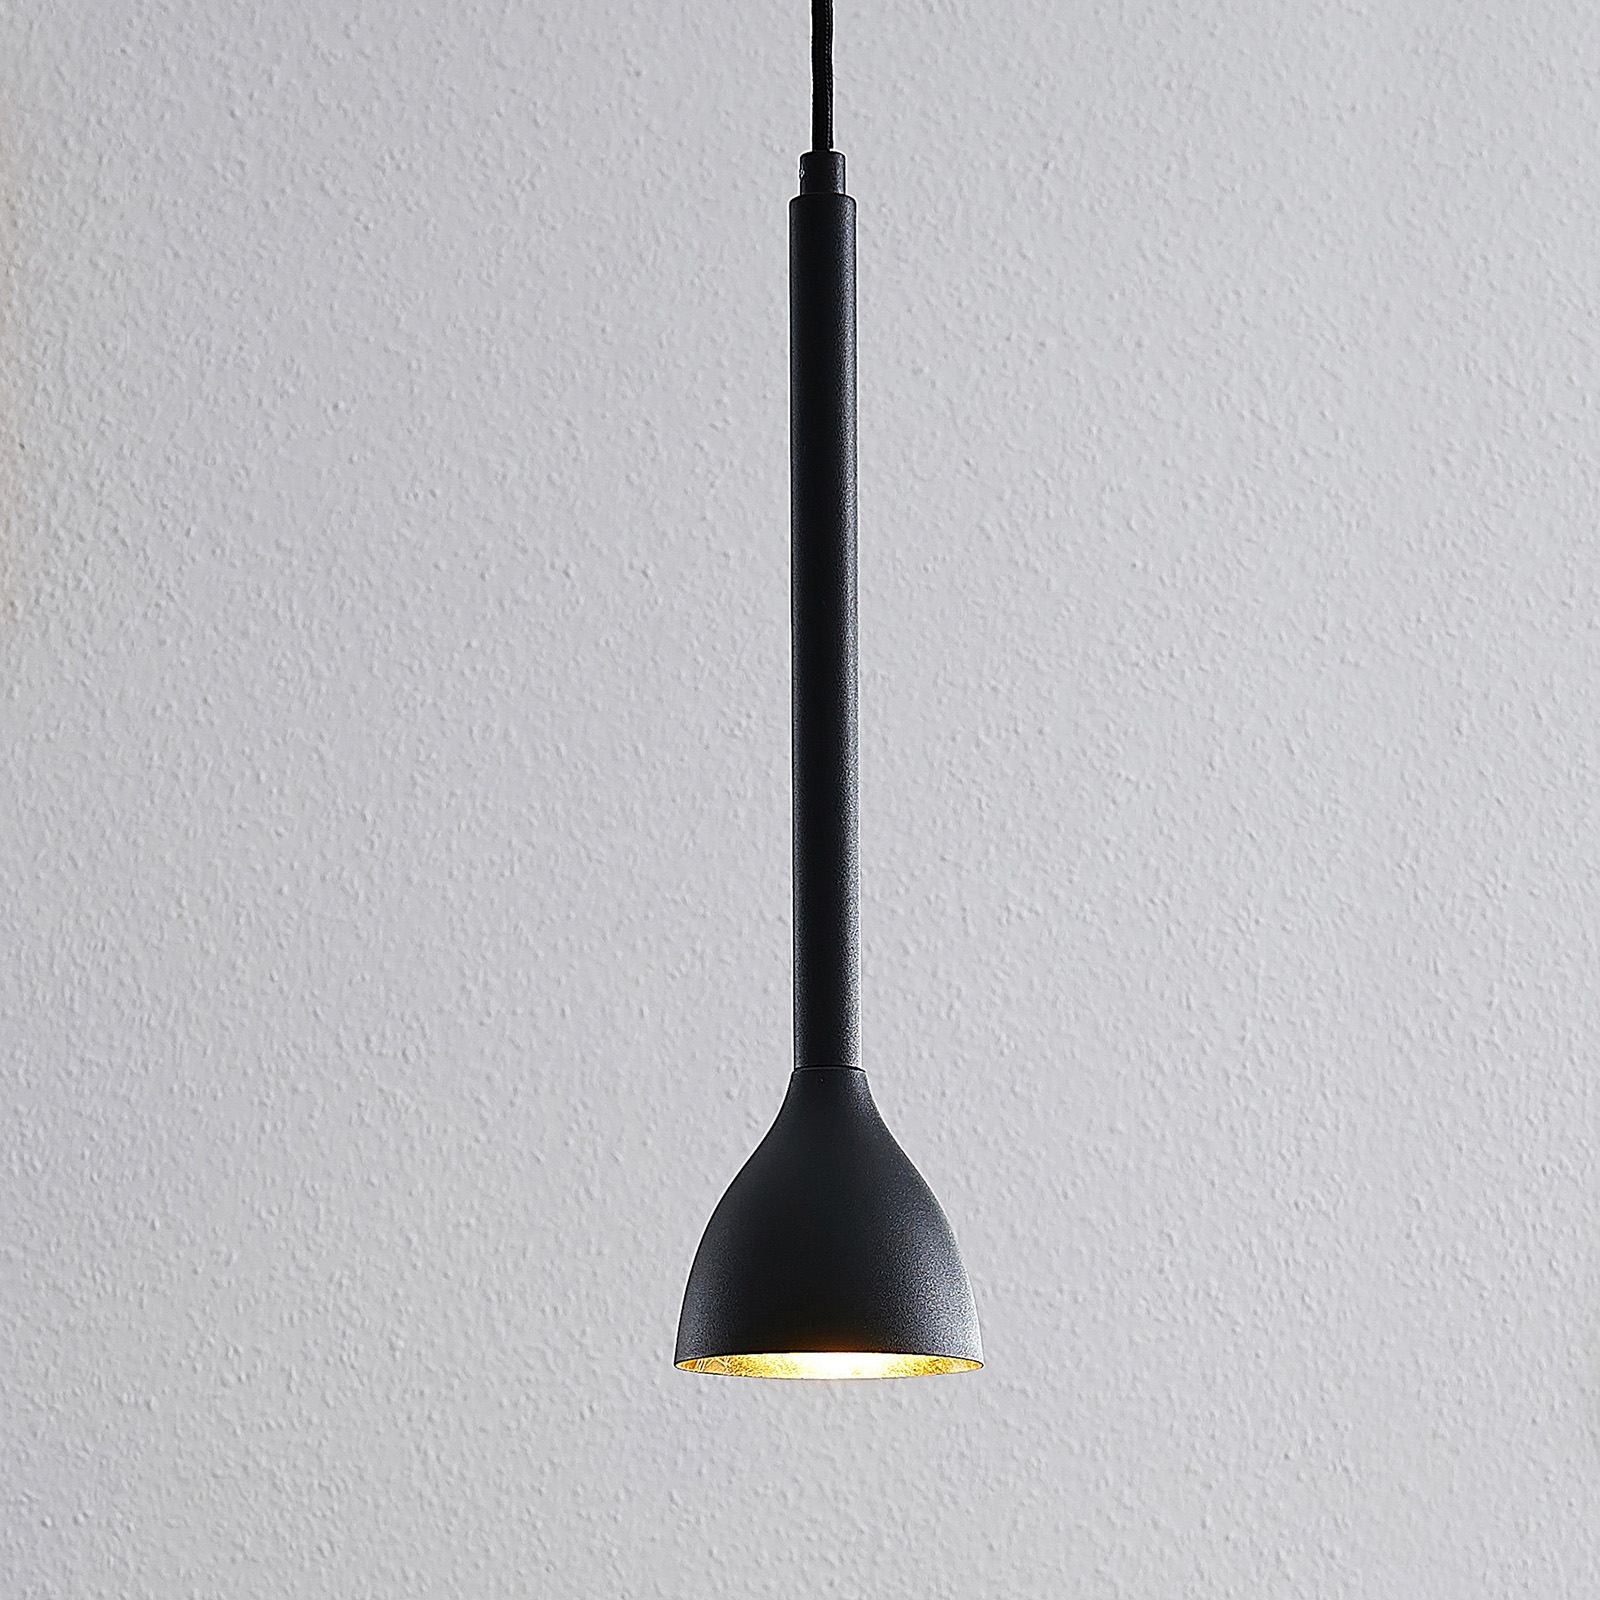 Hængelampe Nordwin, 1 lyskilde, sort/guld